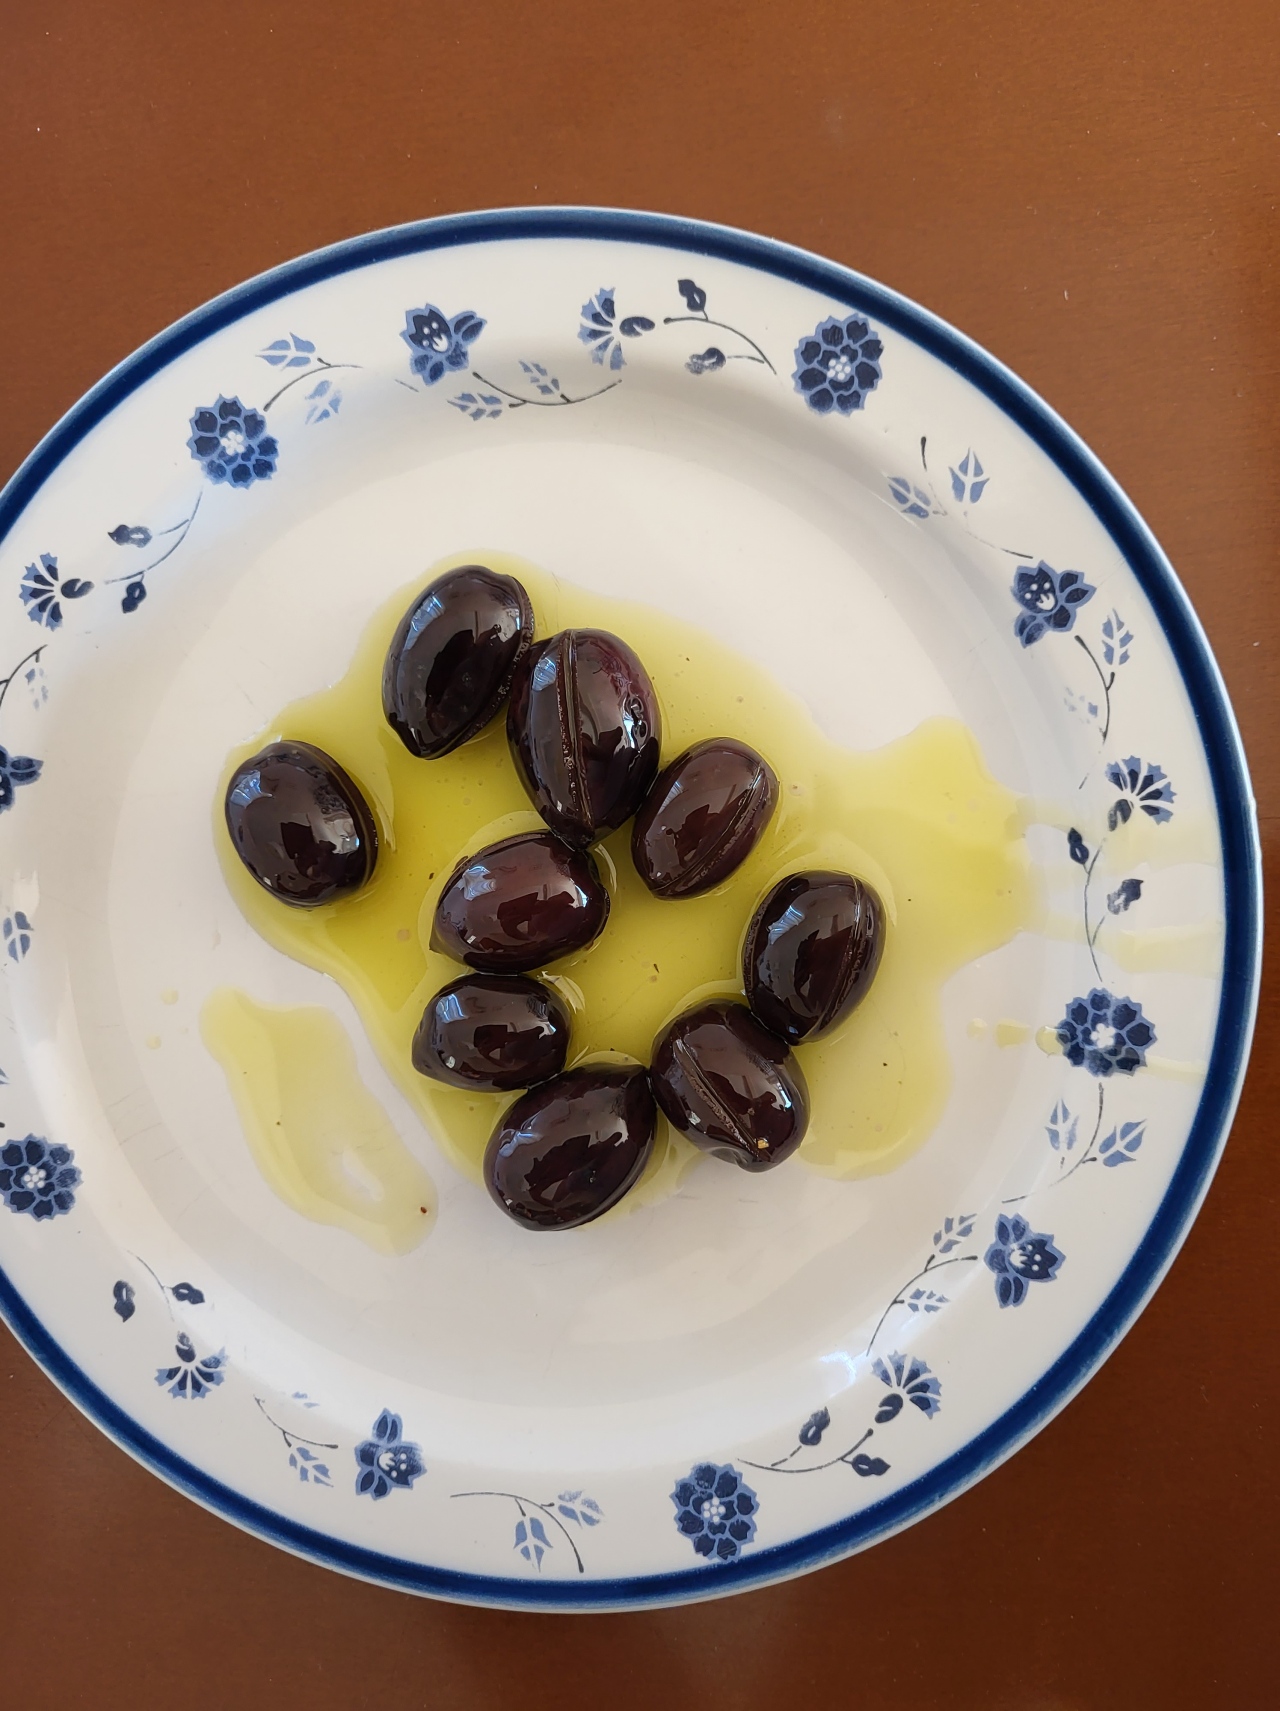 Unsere Oliven, sebstgepflückt und eingelegt